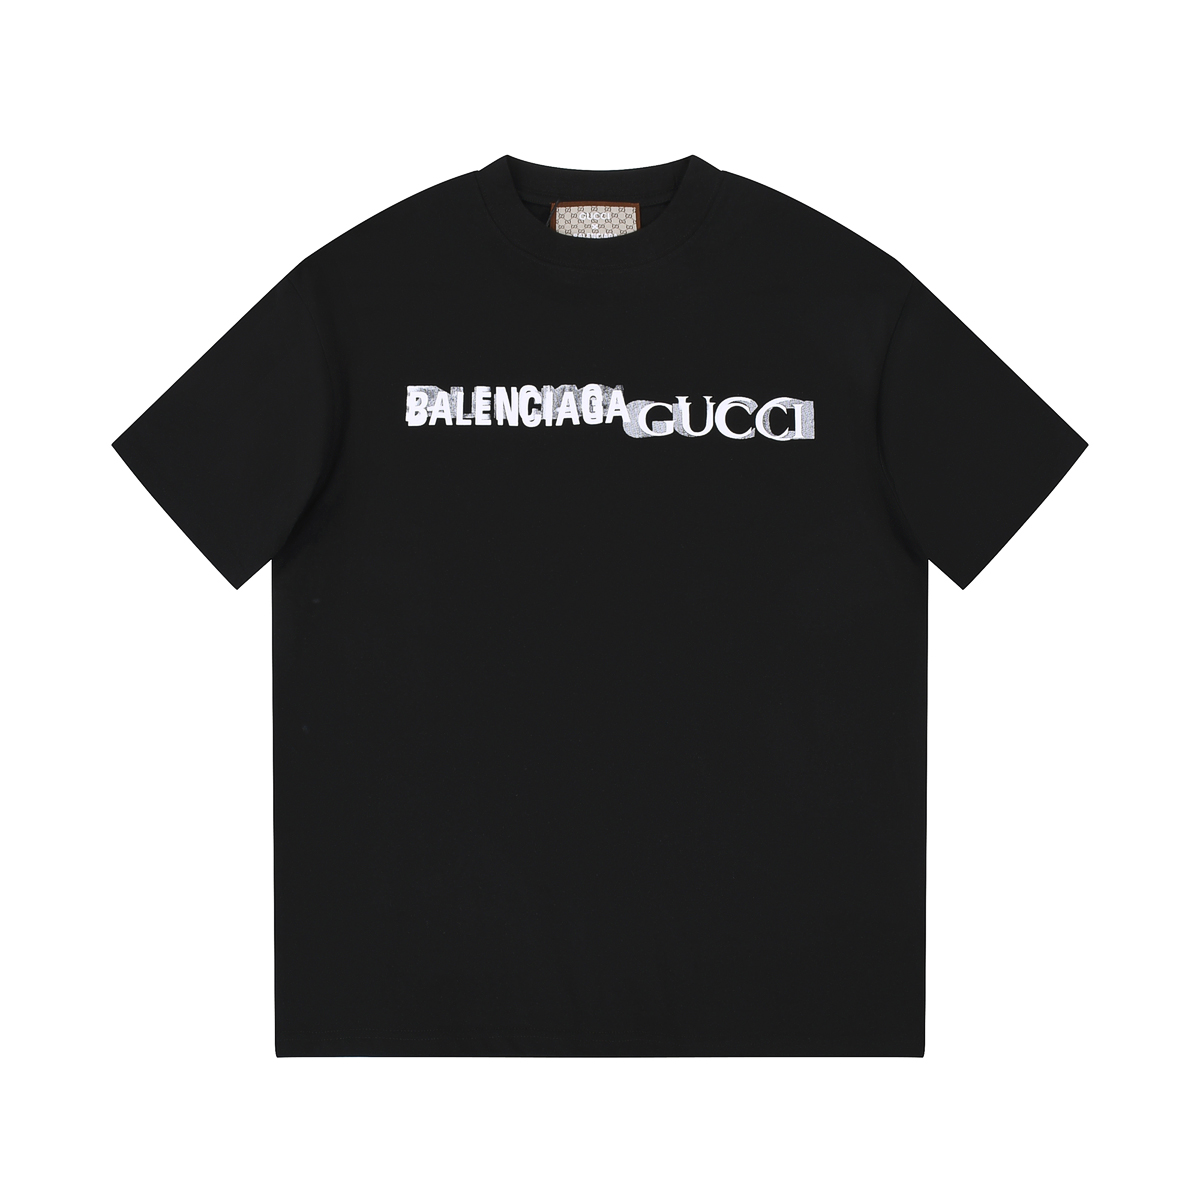 Balenciaga & Gucci Logo Printed Cotton Comfortable Unisex T-shirt